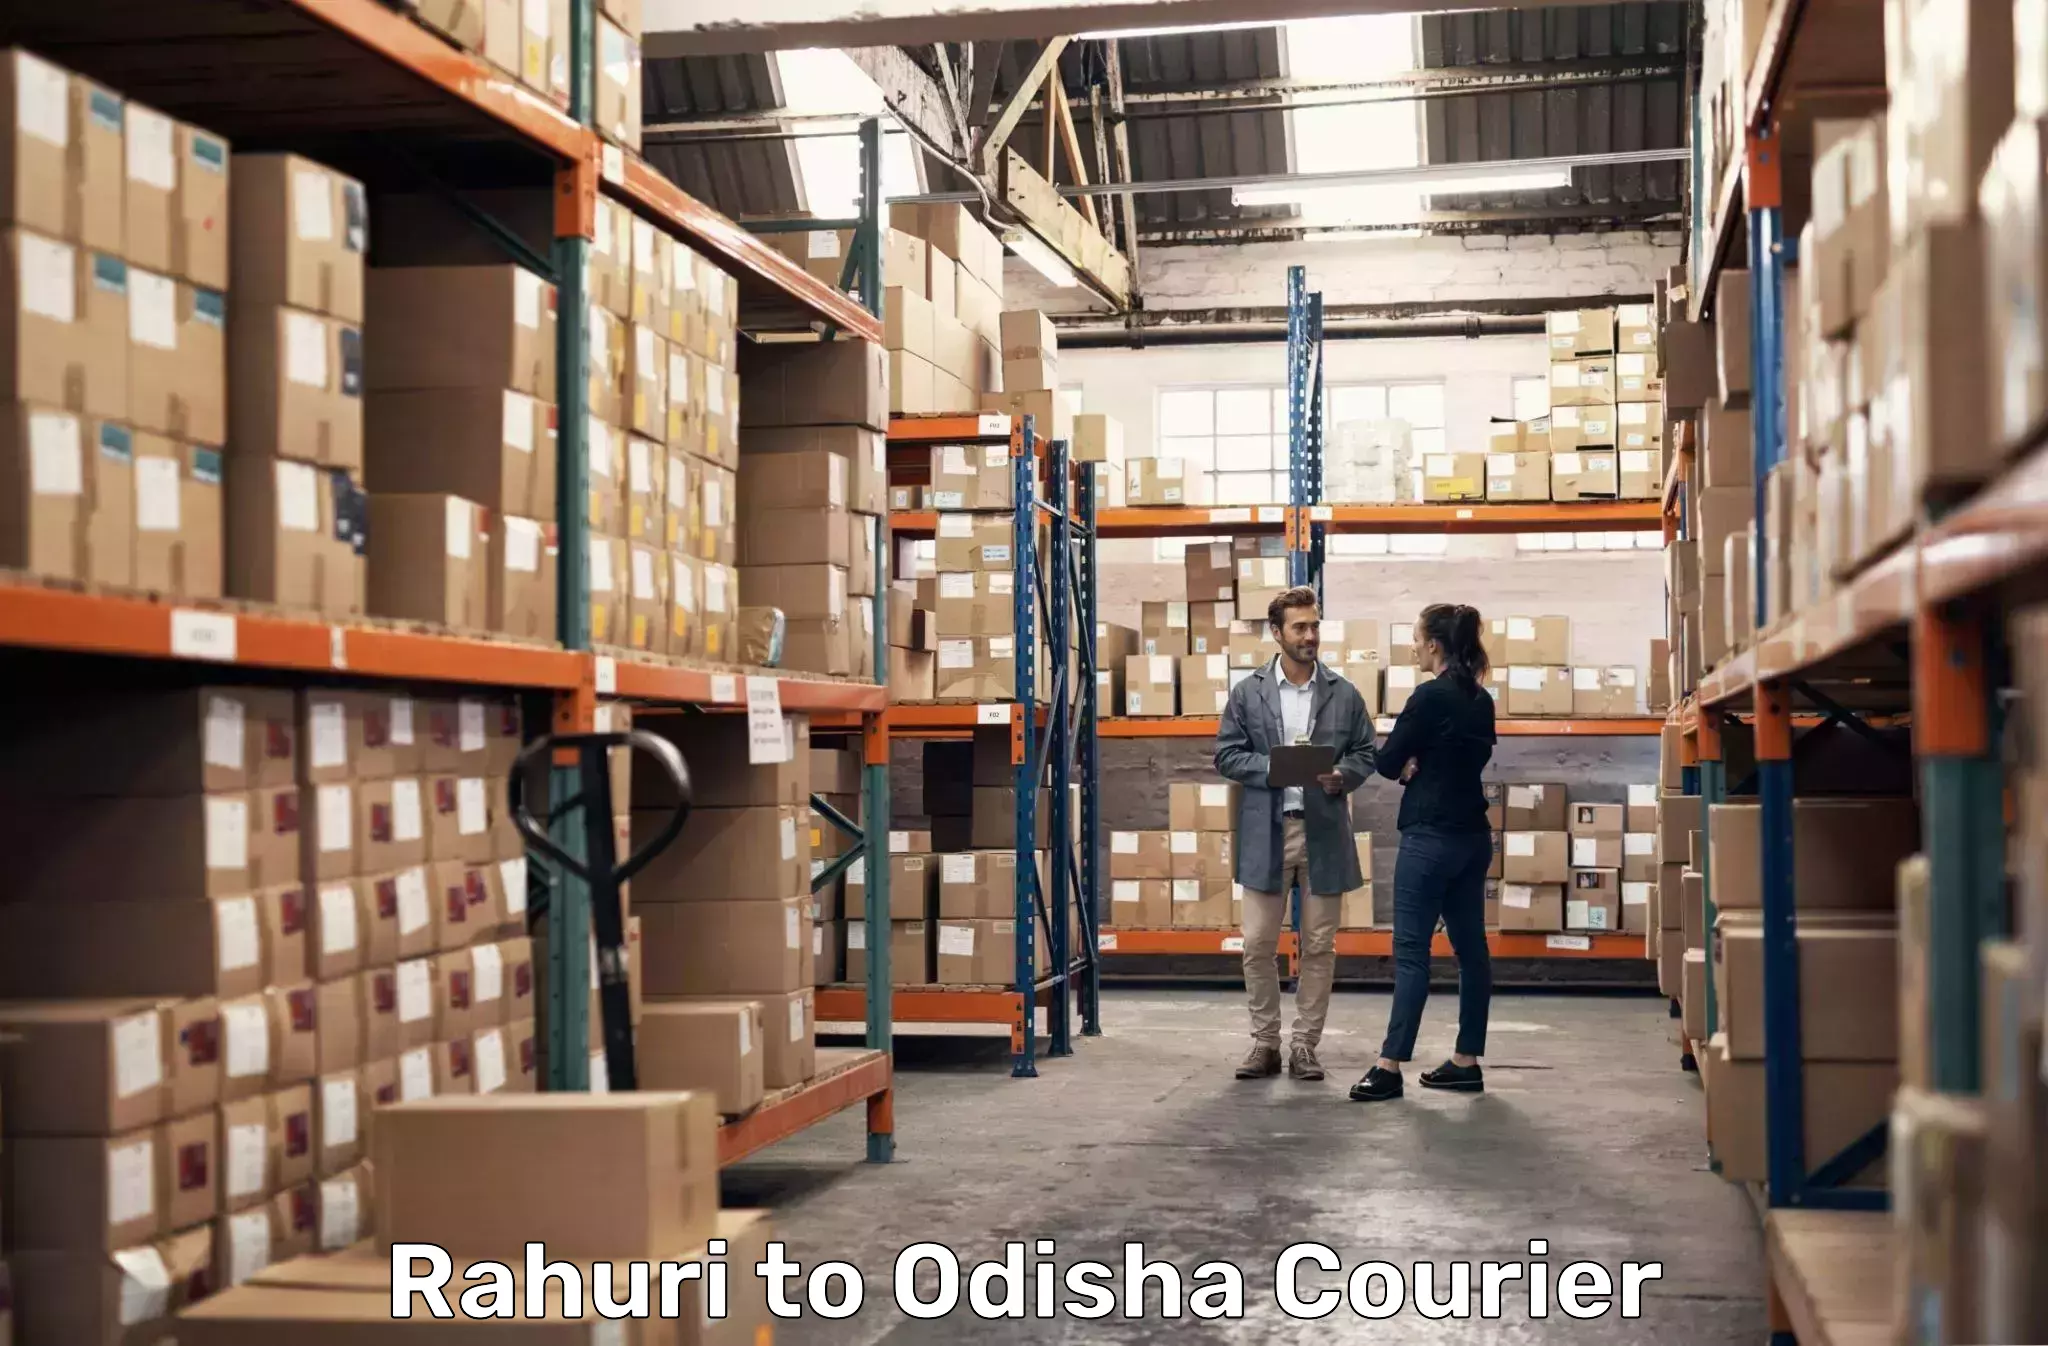 Urban courier service Rahuri to Subdega